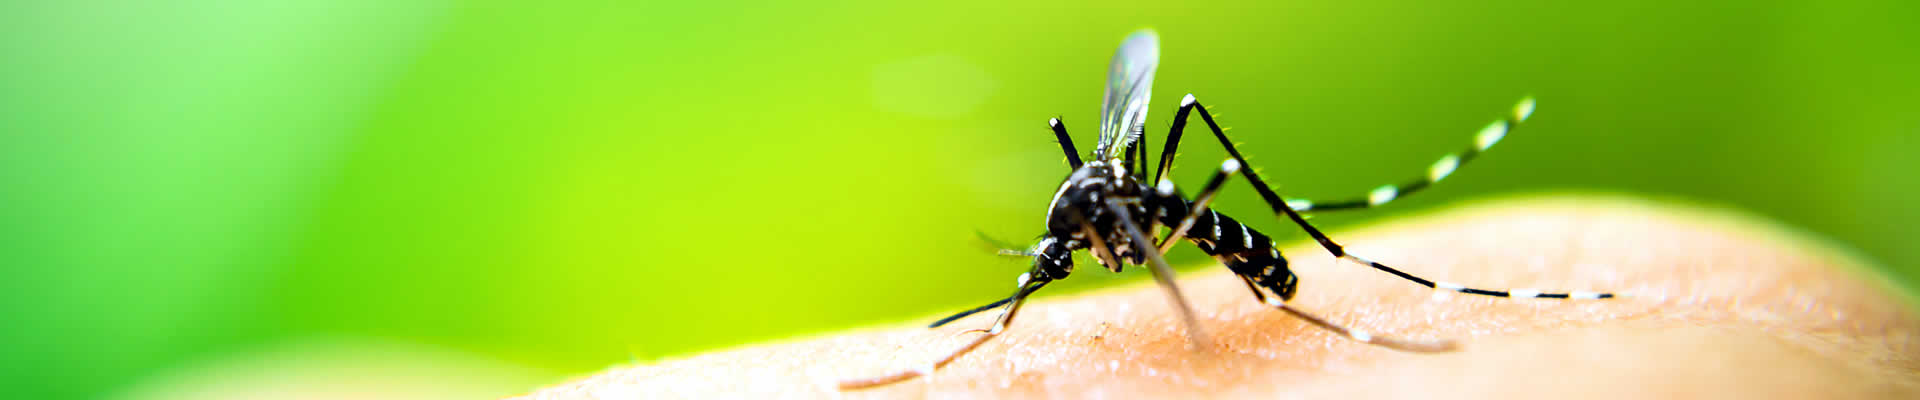 Fliegengitter Insektenschutz Mückenschutz